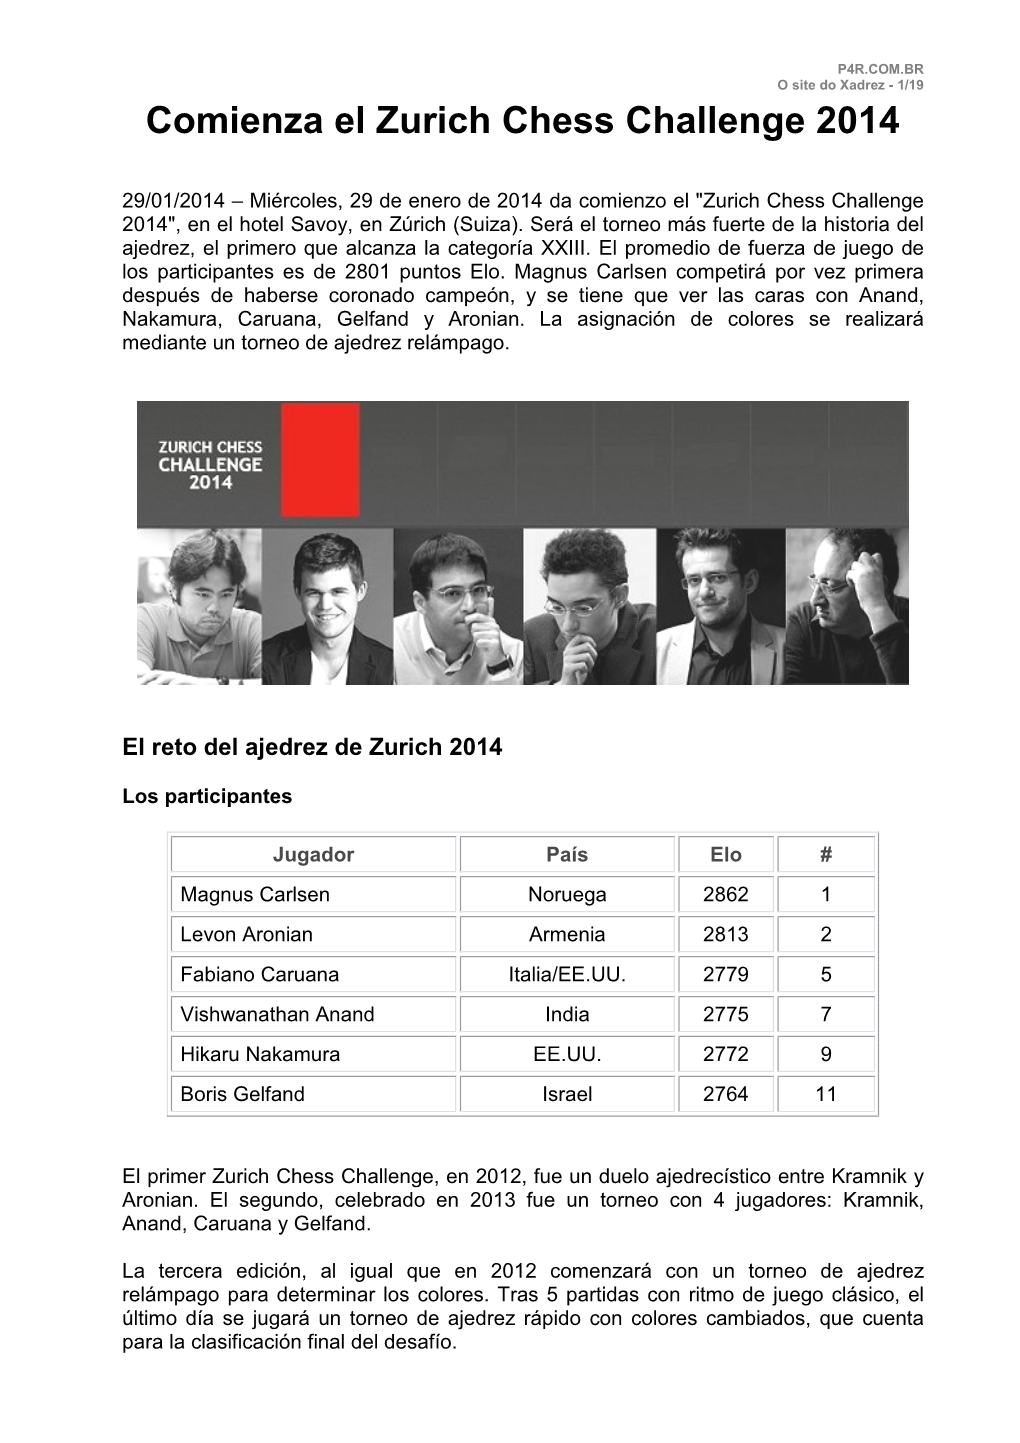 Comienza El Zurich Chess Challenge 2014